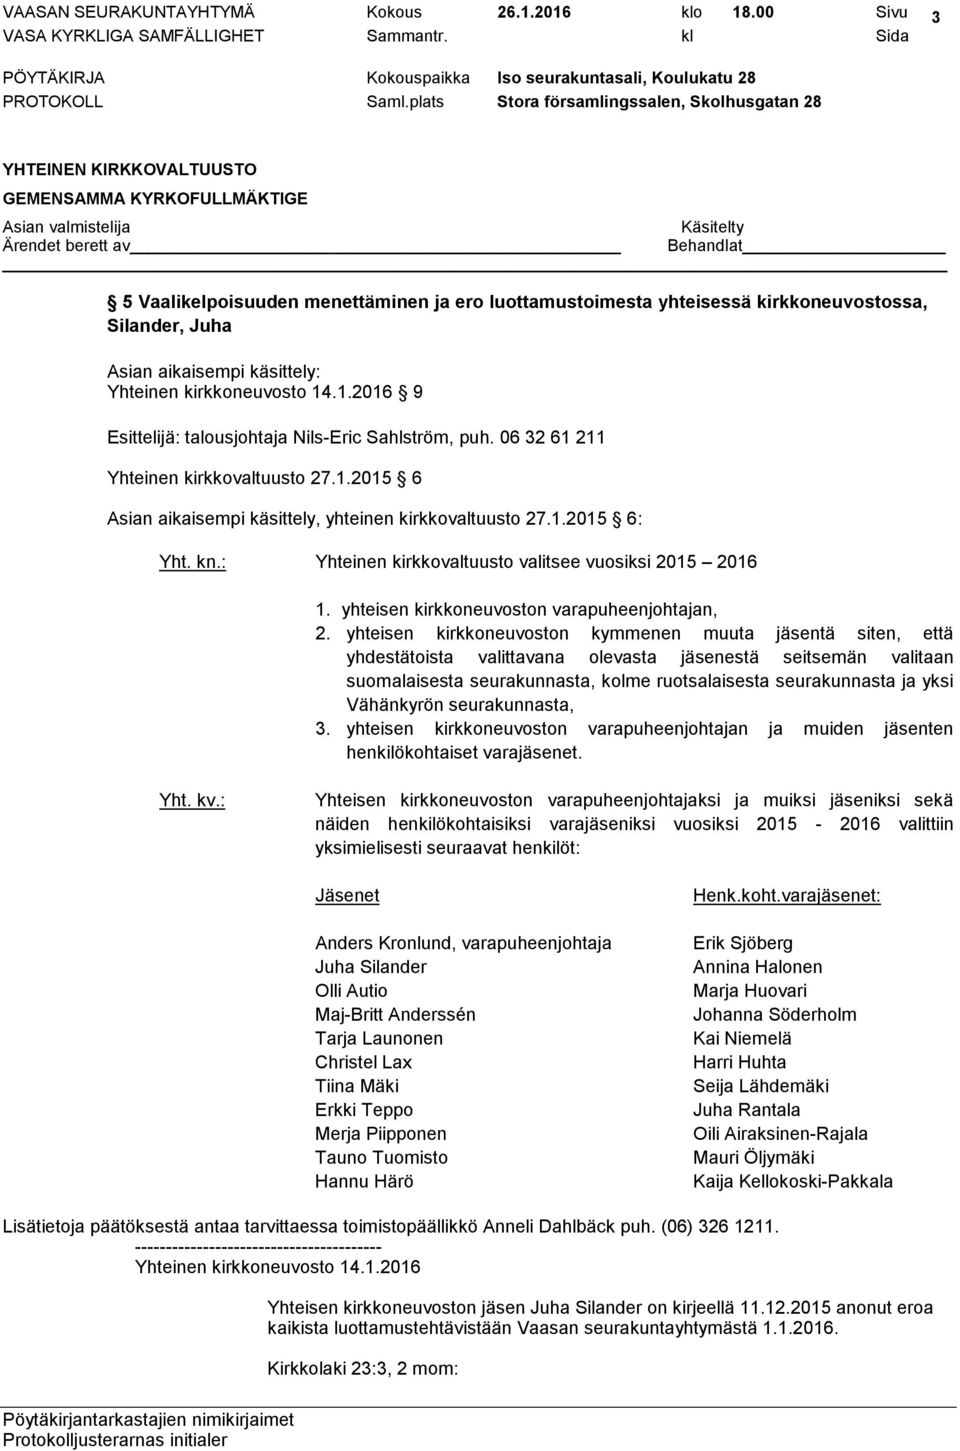 yhteisen kirkkoneuvoston kymmenen muuta jäsentä siten, että yhdestätoista valittavana olevasta jäsenestä seitsemän valitaan suomalaisesta seurakunnasta, kolme ruotsalaisesta seurakunnasta ja yksi